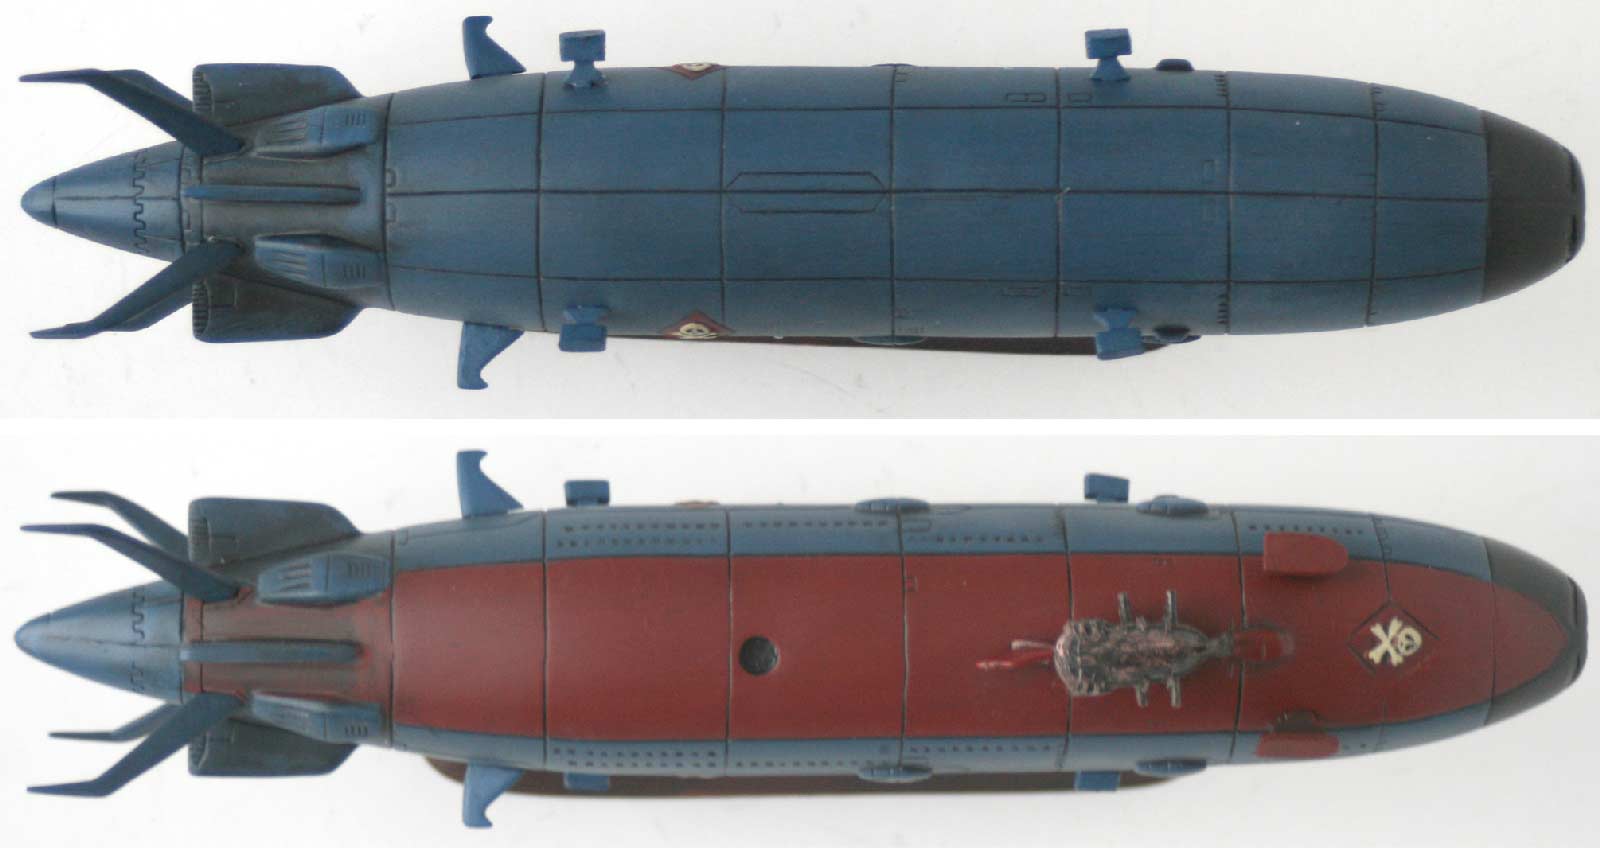 vue de dessus et de dessous du Queen Emeraldas - Leiji's Space ship collection (jouet)